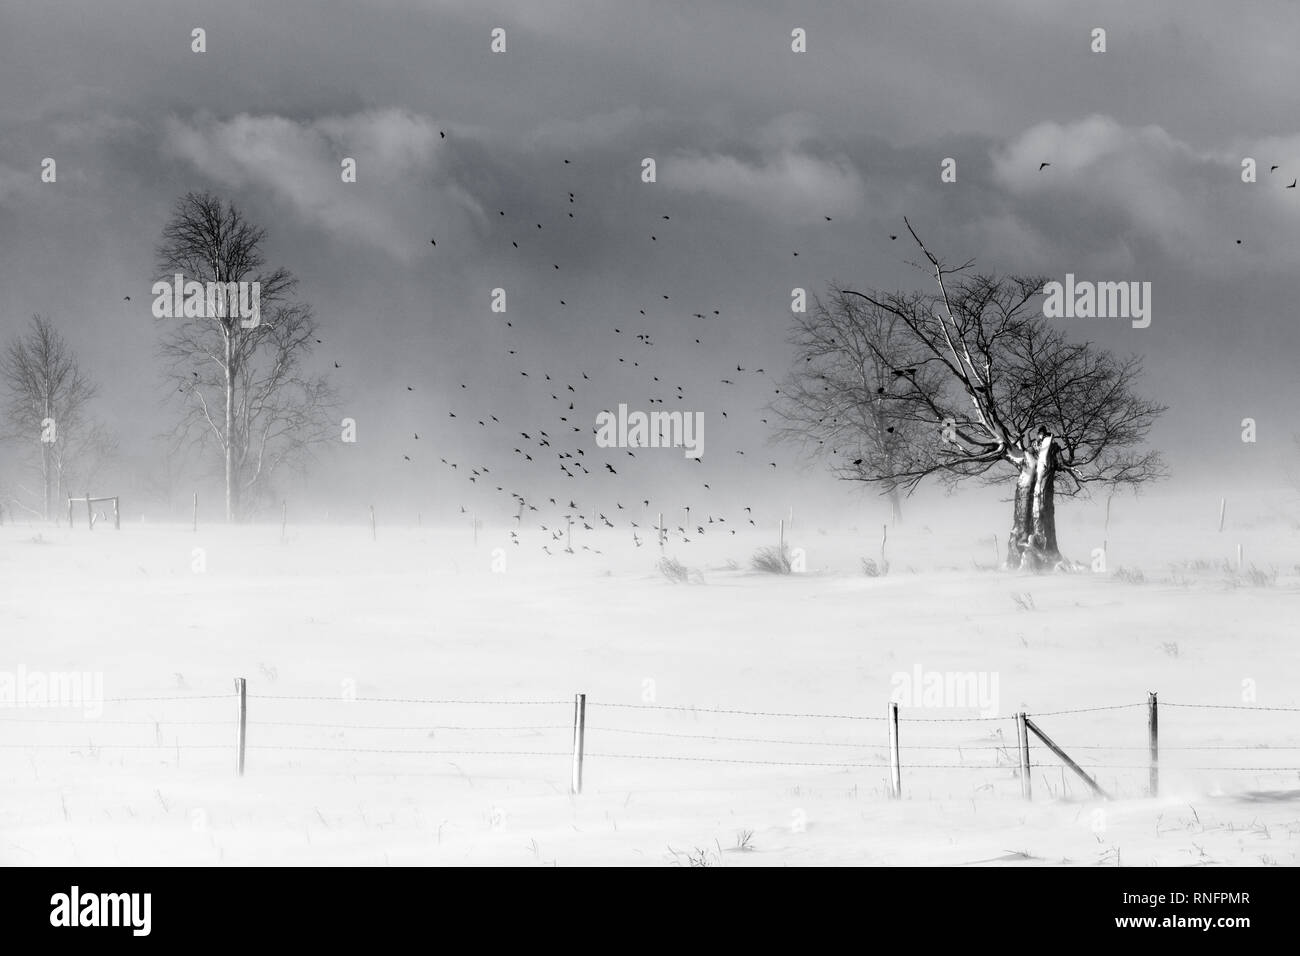 Schnee, Zaun, Bäume und Vögel in dem Land von Mohawk Valley, New York State, USA. Stockfoto